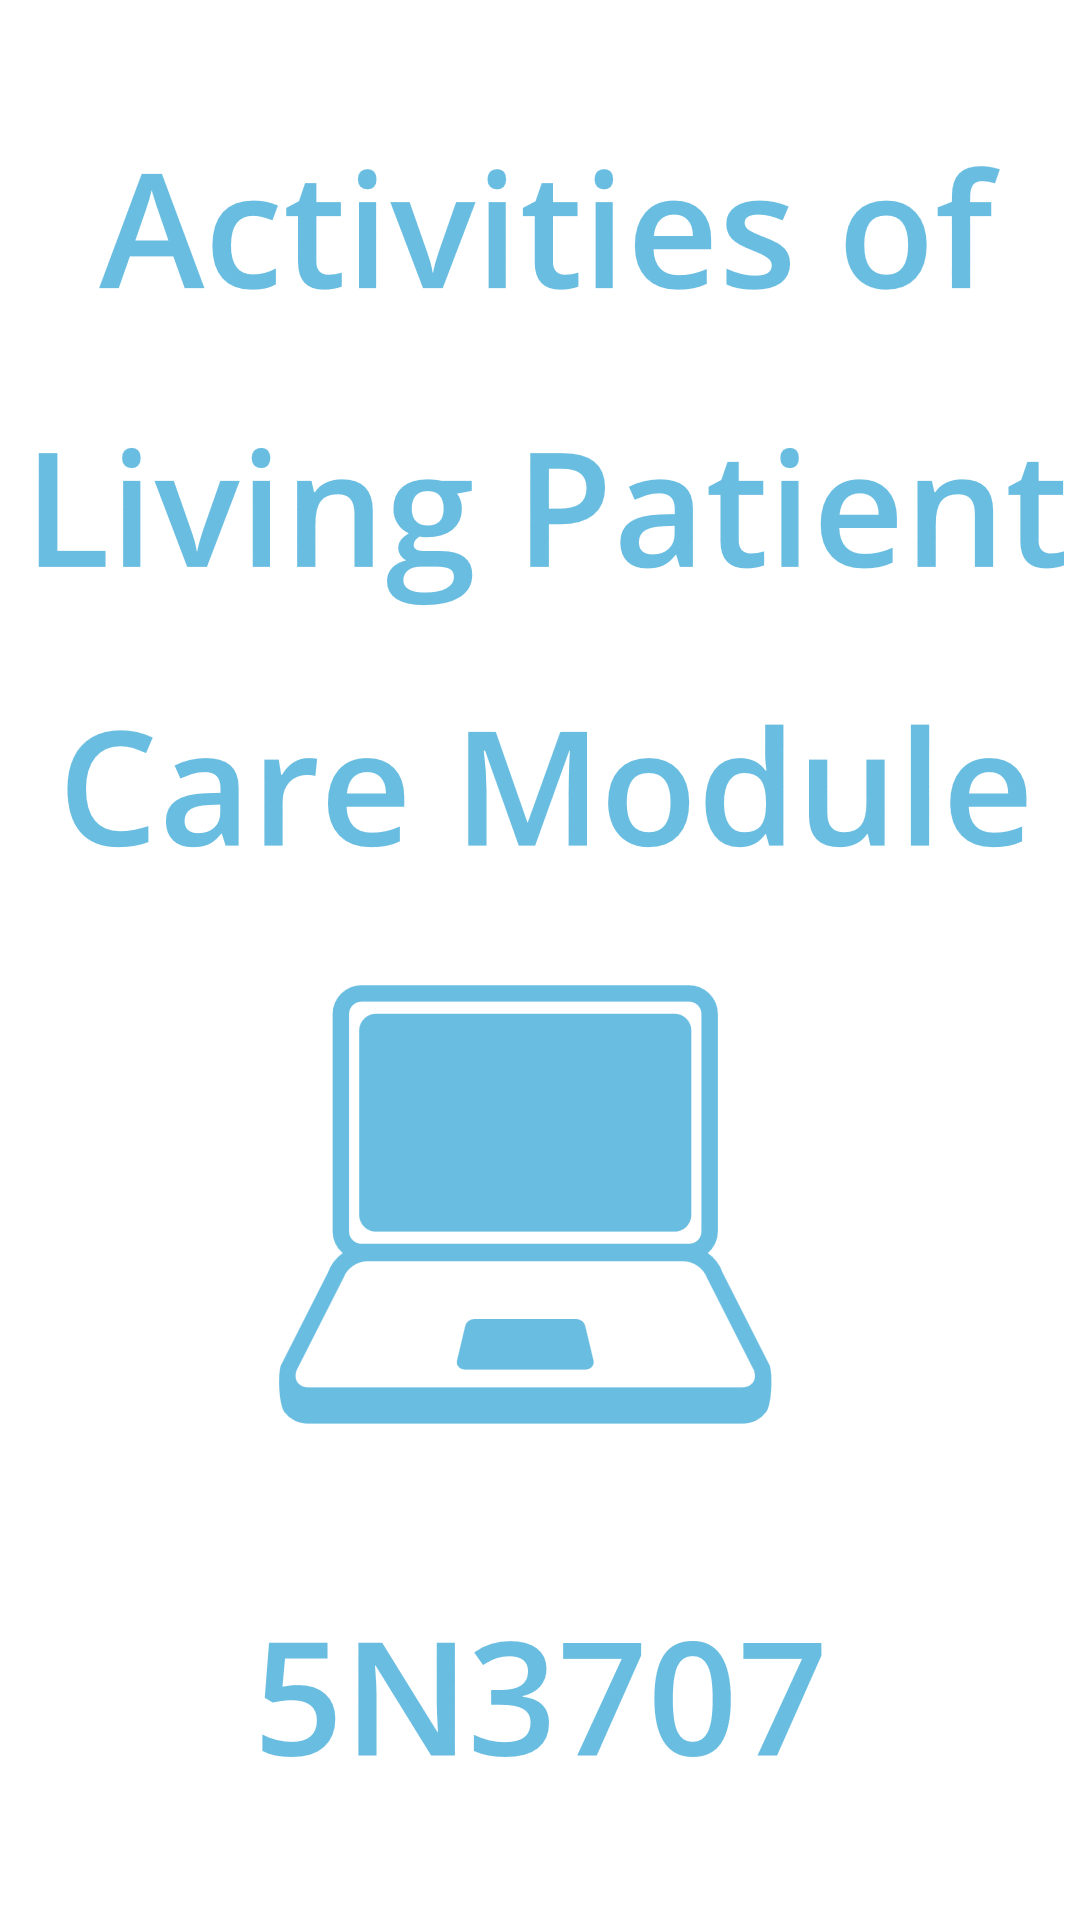 Activities of Living Patient Care